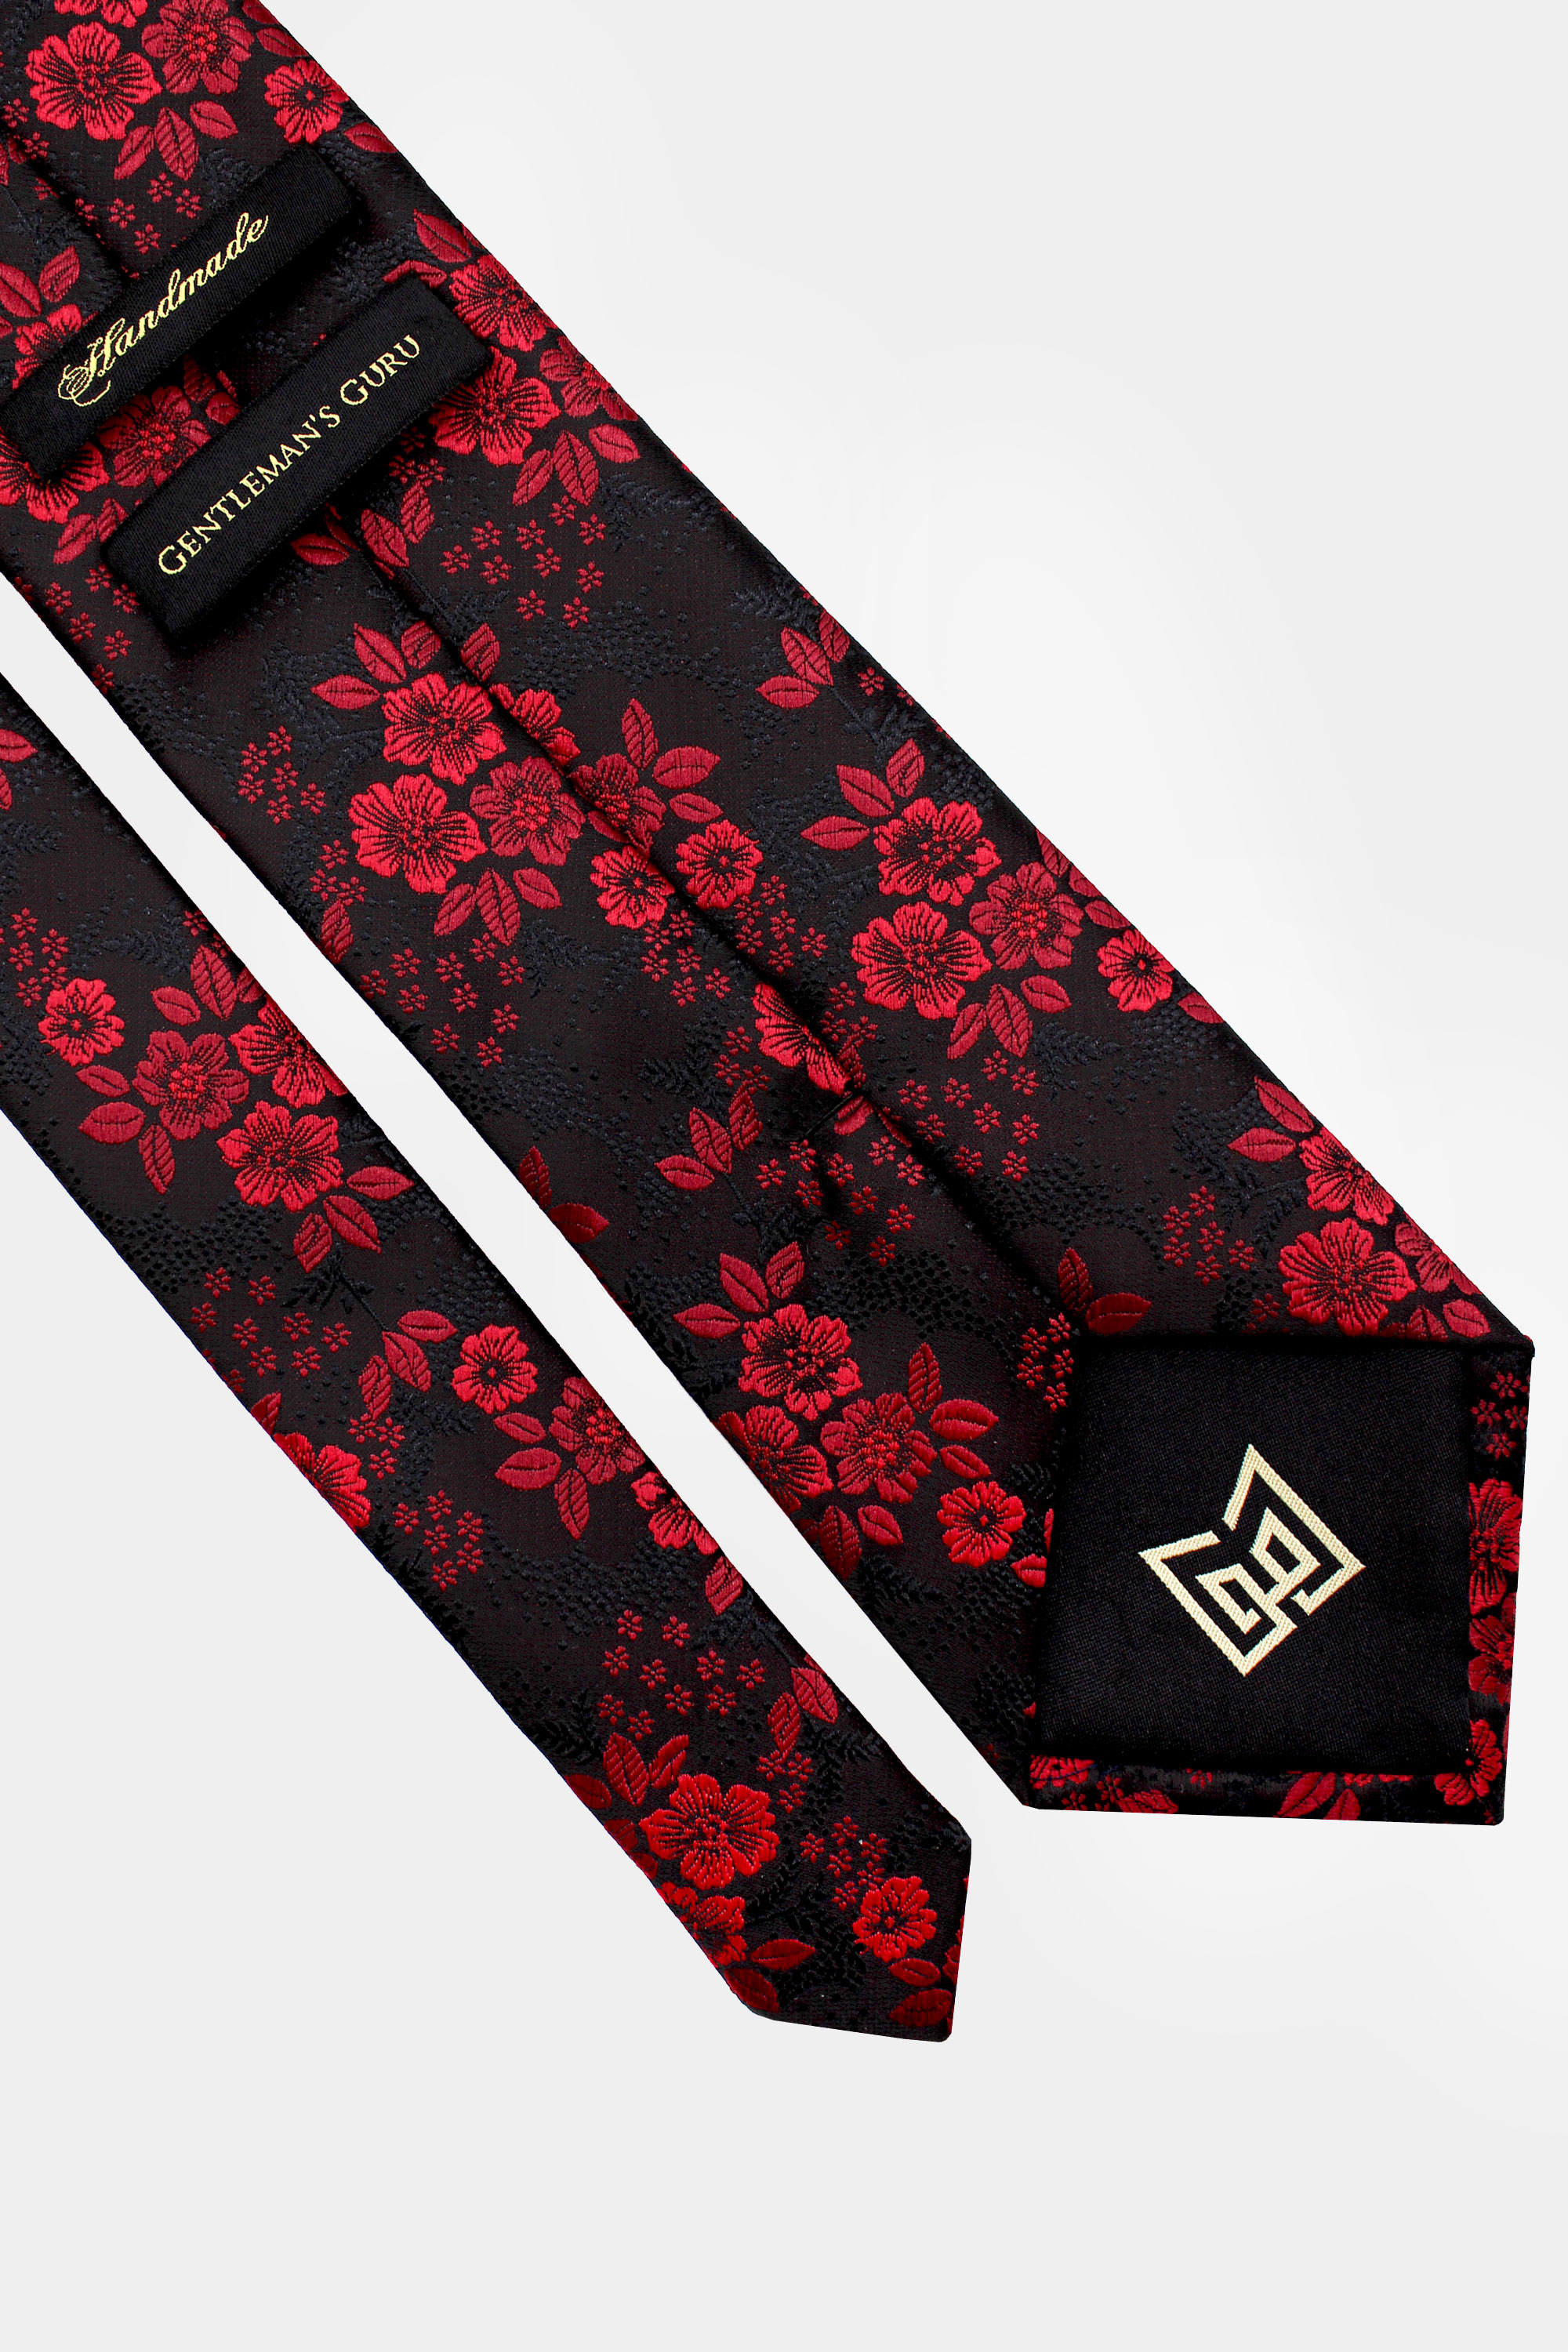 Maroon-and-Black-Floral-Tie-from-Gentlemansguru.com